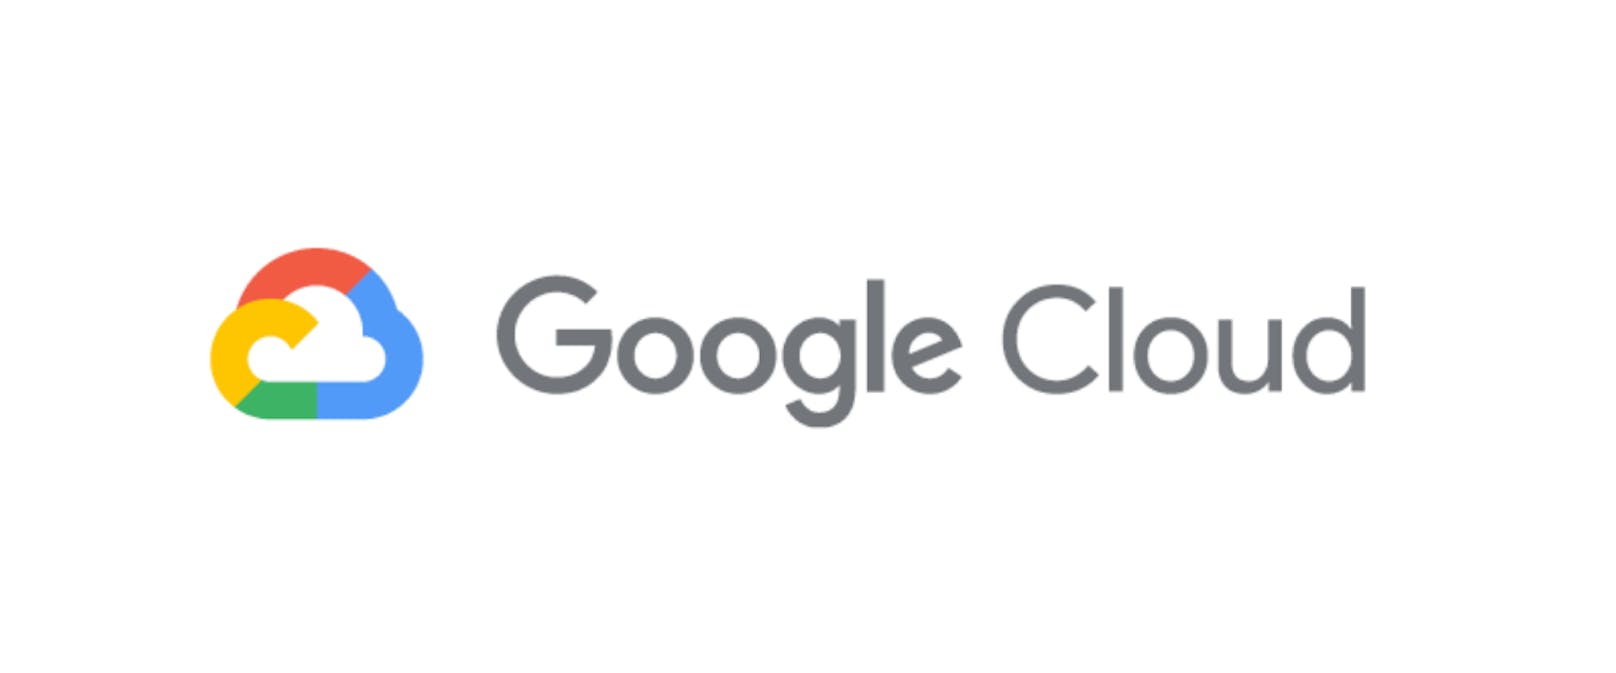 Google Cloud erweitert die Sprachunterstützung in Google Meet.